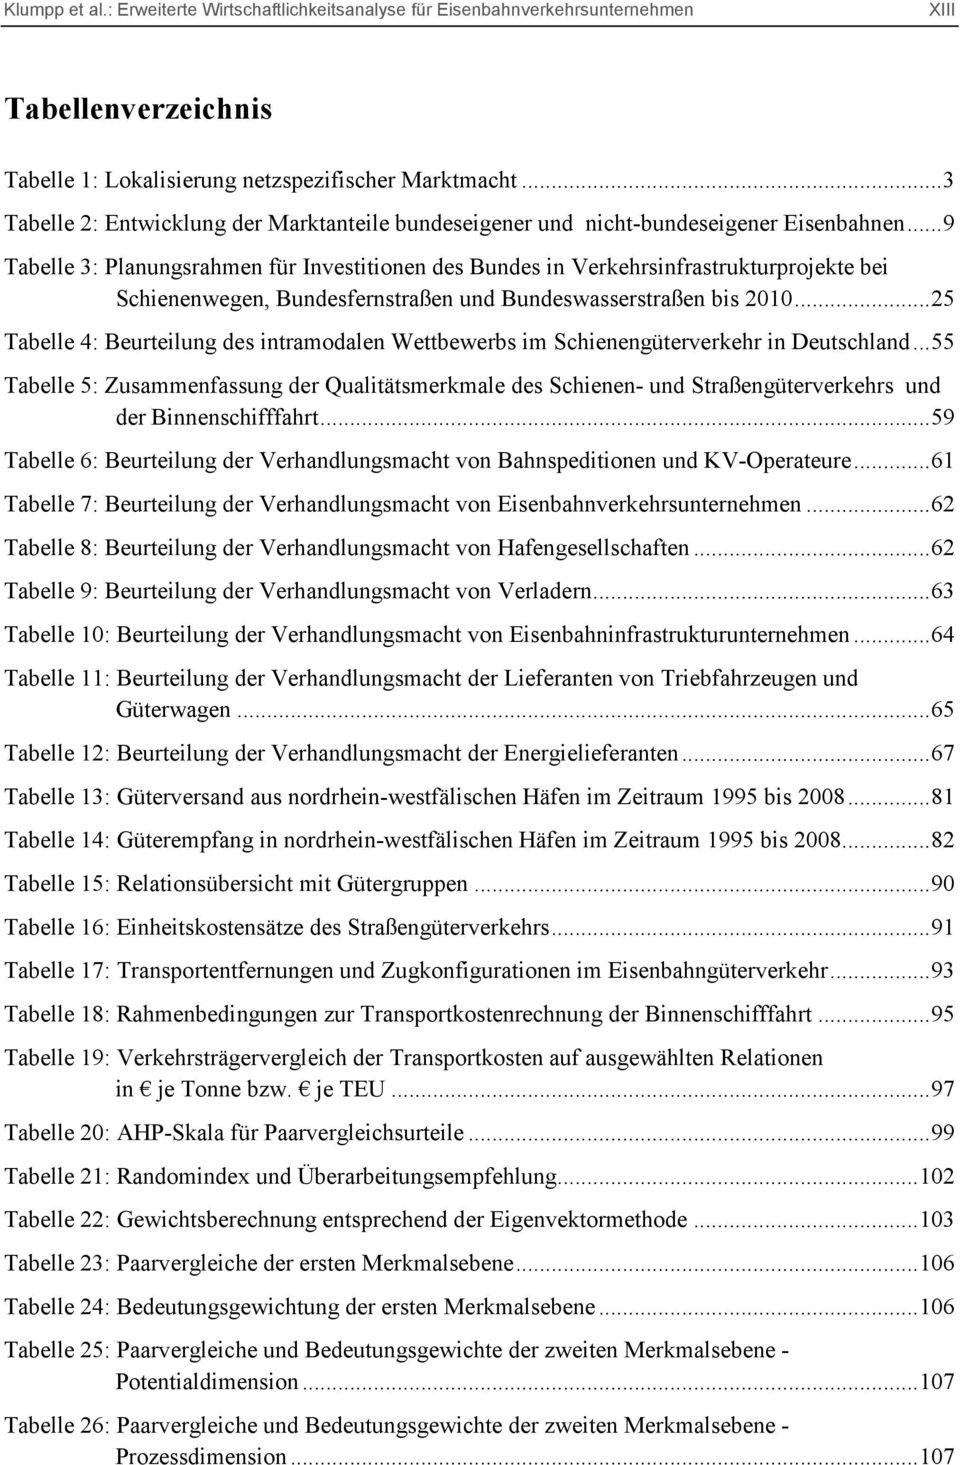 ..25 Tabelle 4: Beurteilung des intramodalen Wettbewerbs im Schienengüterverkehr in Deutschland.